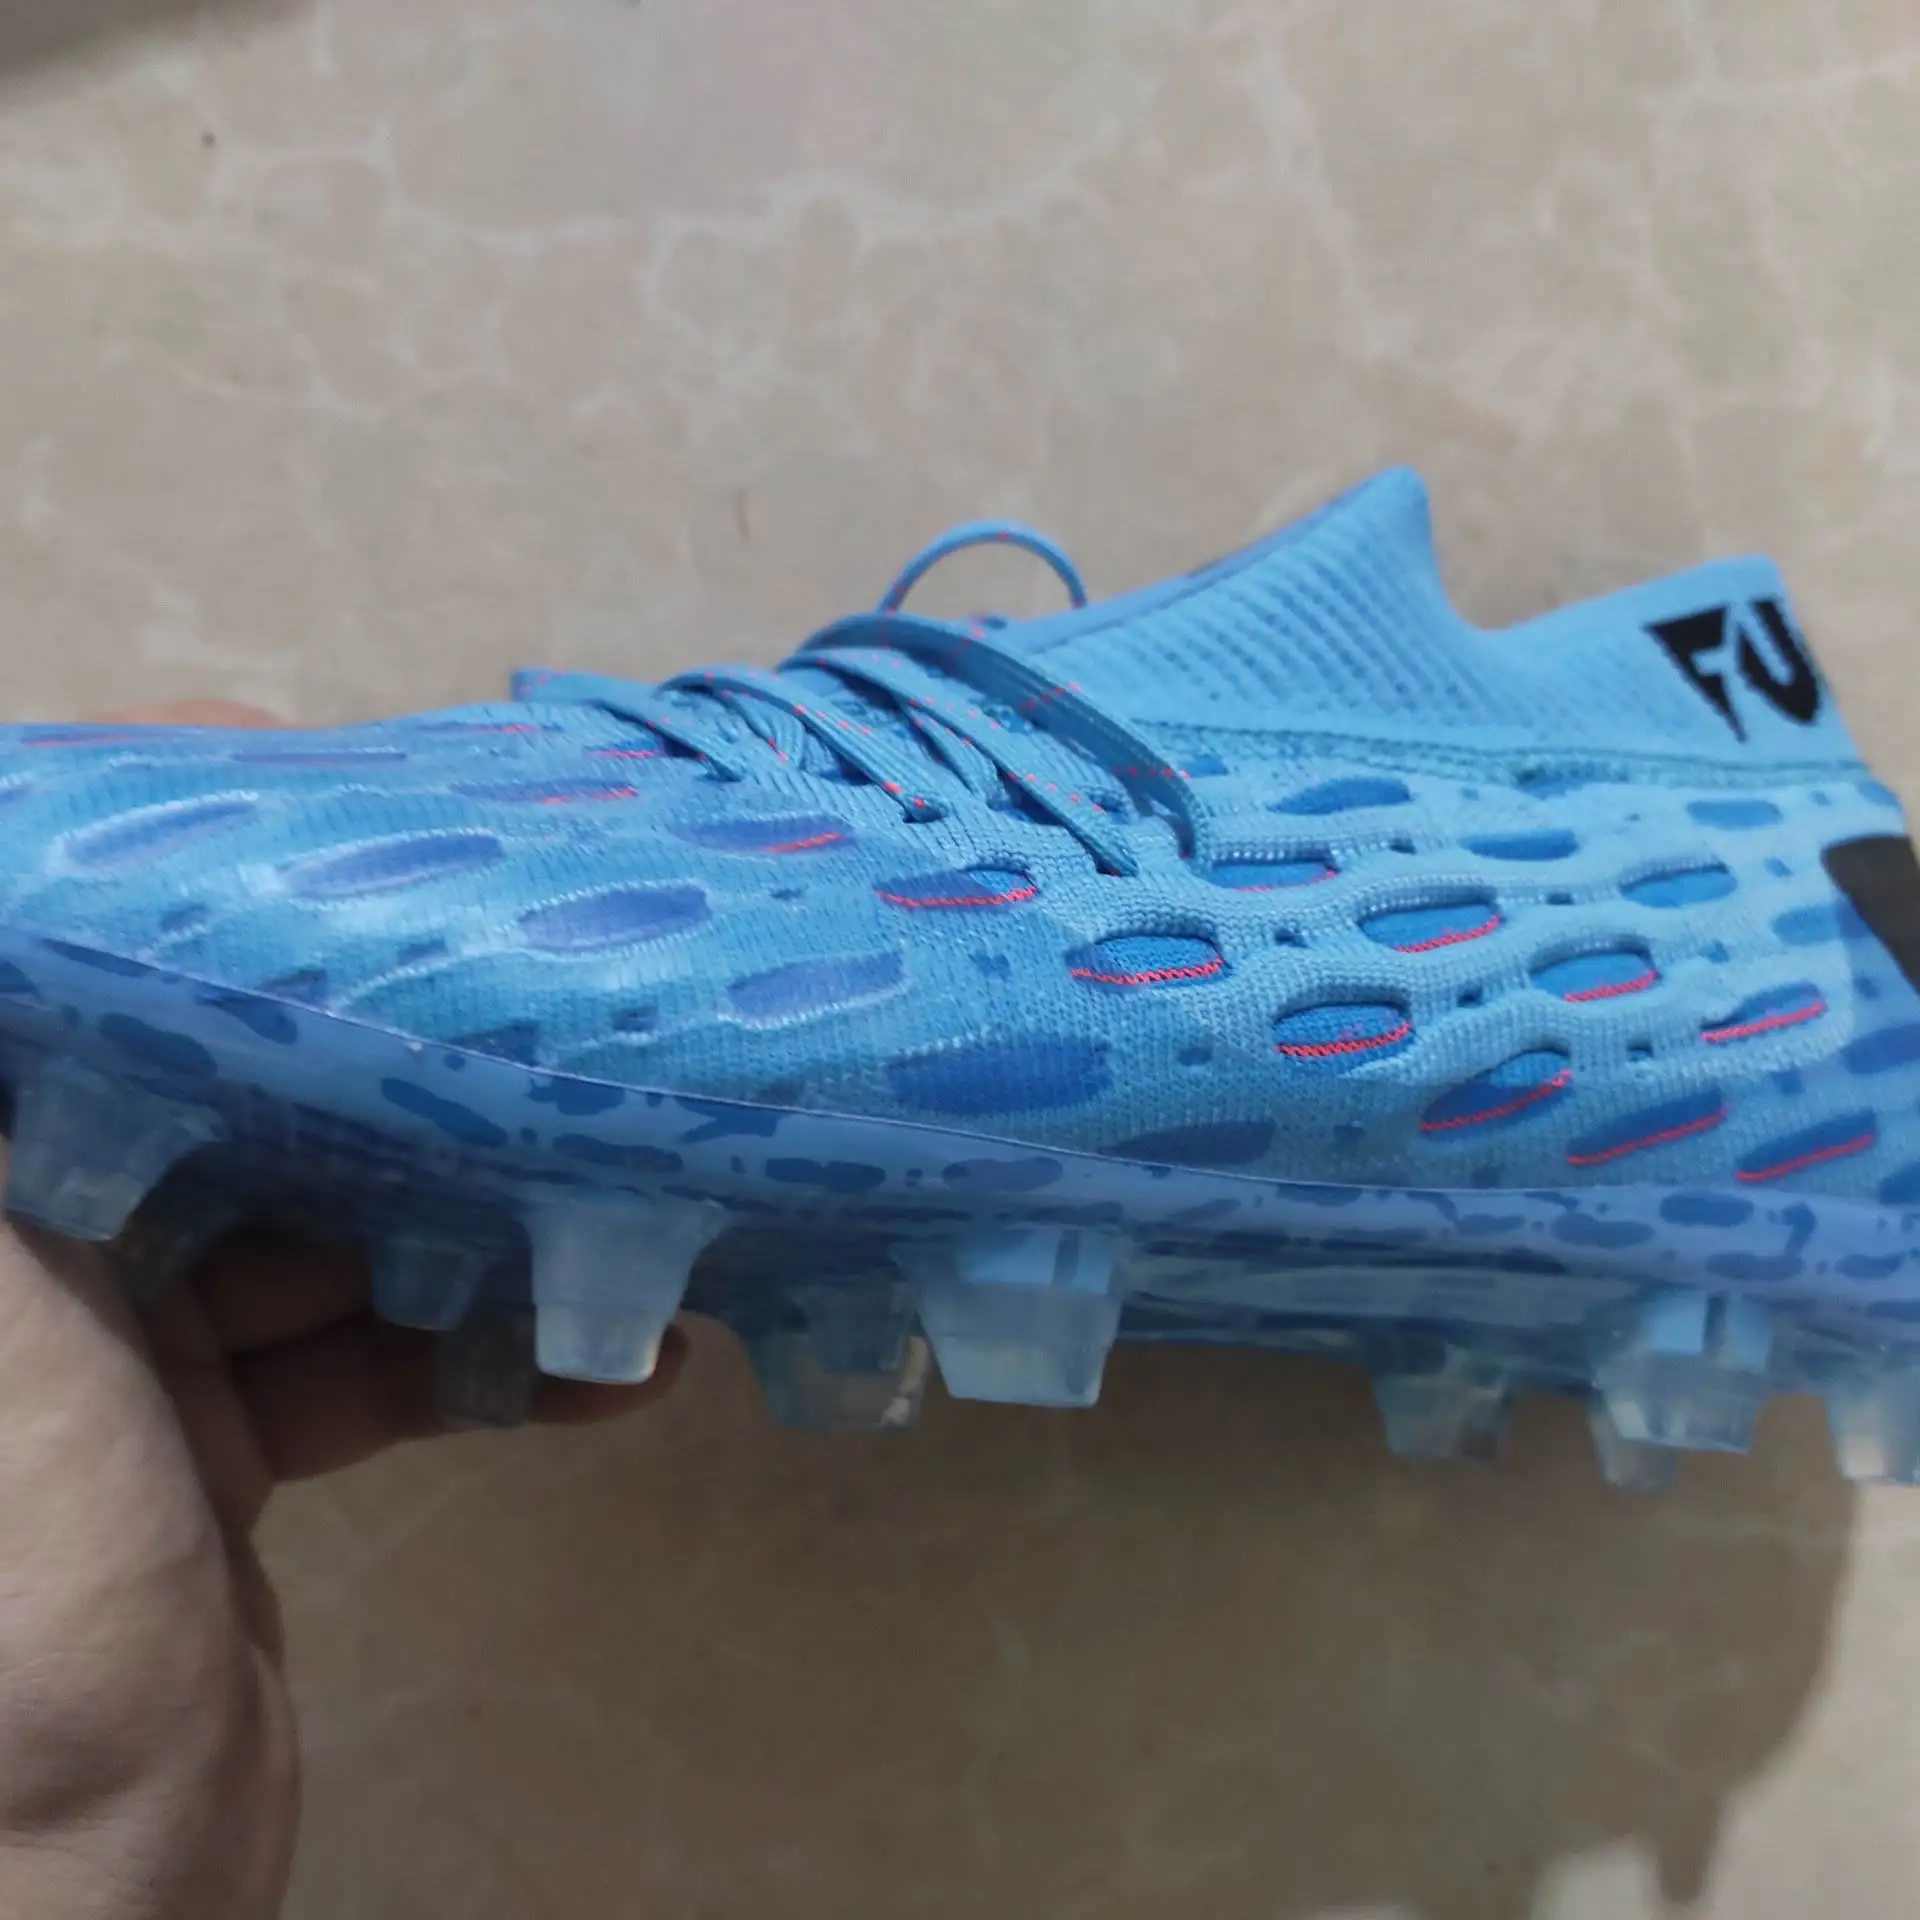 Imcute-5 chaussures de football étanches pour hommes, crampons, adaptées aux chaînes, nouvelle marque directe, 2020